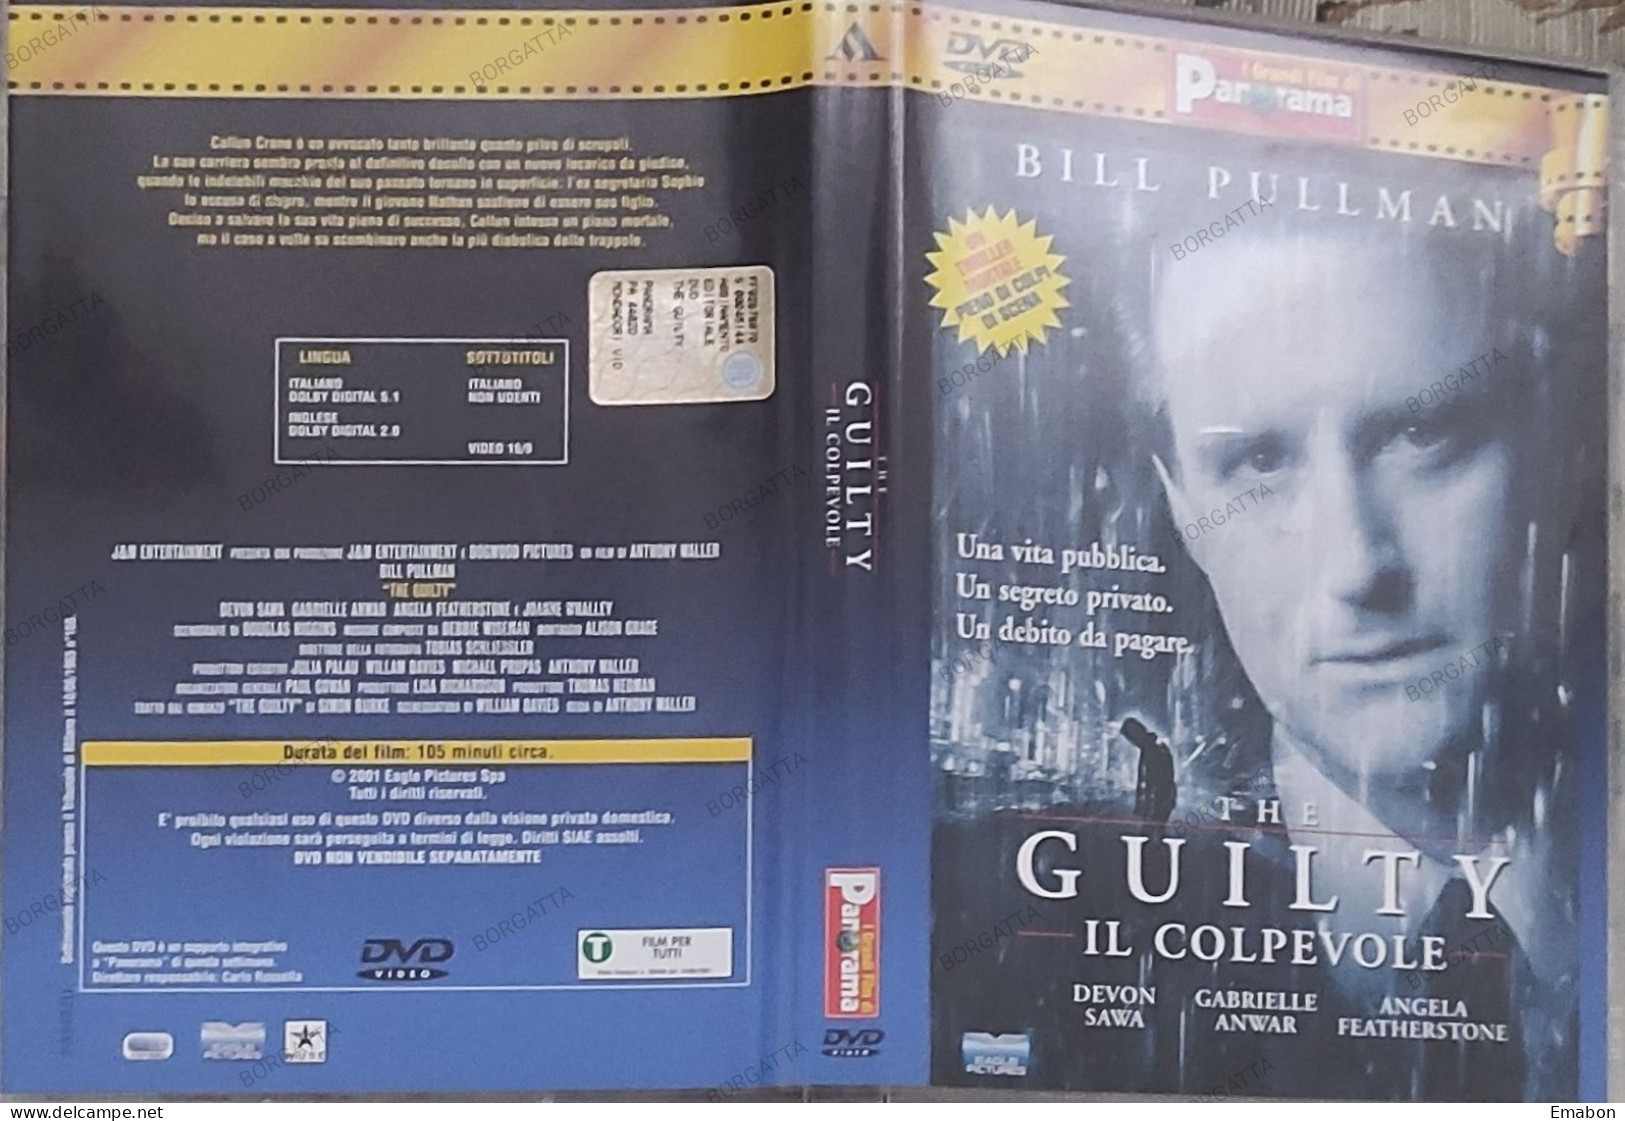 BORGATTA - THRILLER - Dvd  " THE GUILTY IL COLPEVOLE " BILL PULLMAN - PAL 2 - PANORAMA 2001-  USATO In Buono Stato - Drama